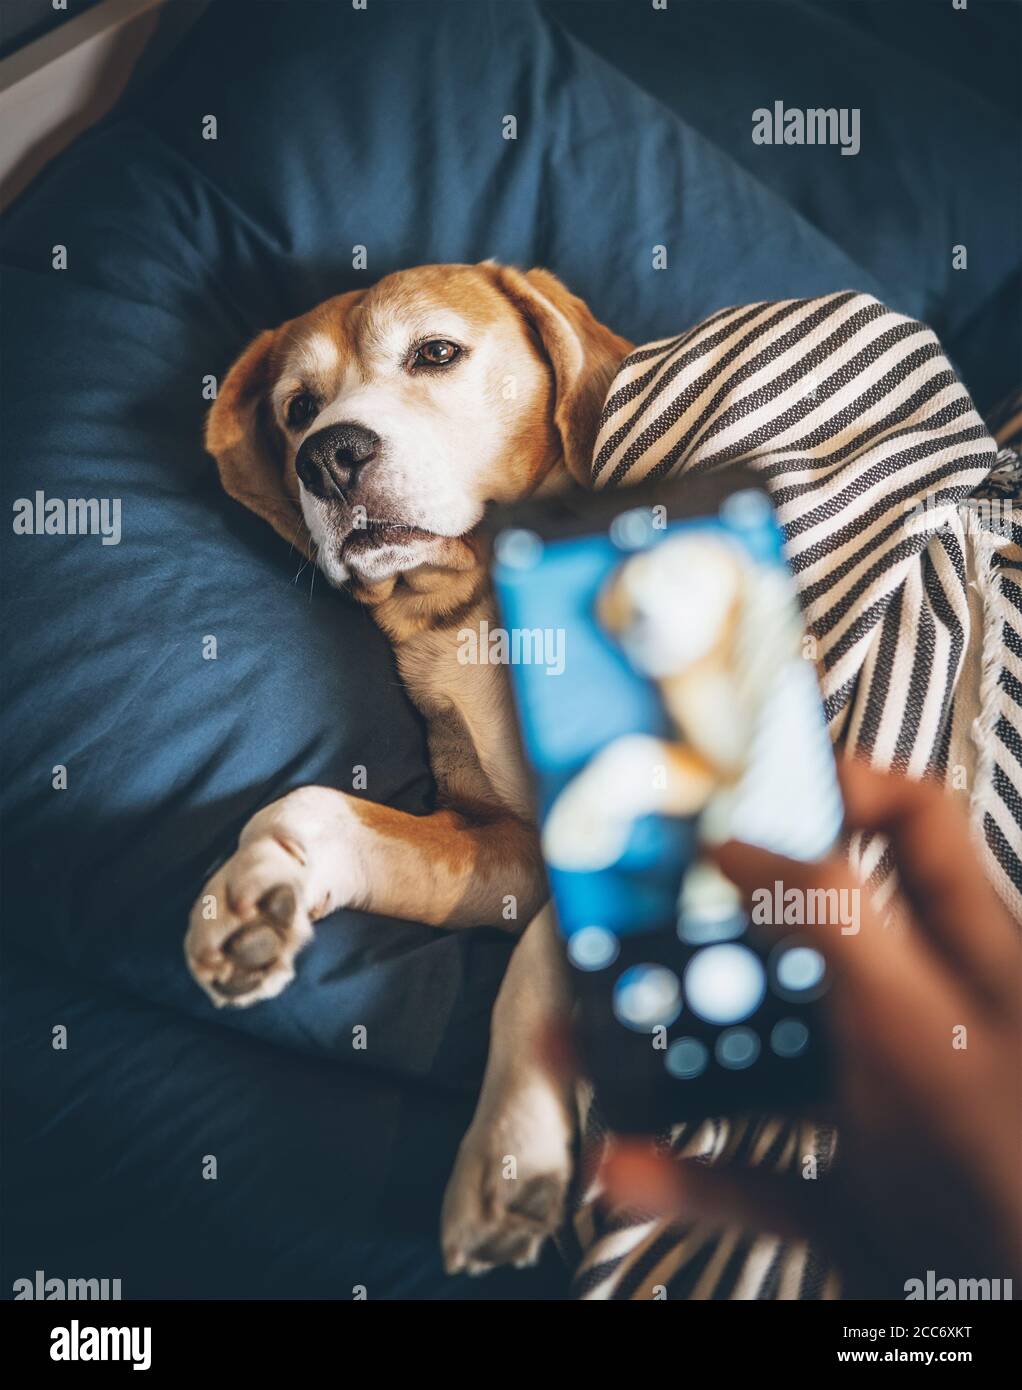 Der Besitzer fotografiert seinen Beagle-Hund, der im Bett schläft Und  bricht seine Träume Stockfotografie - Alamy